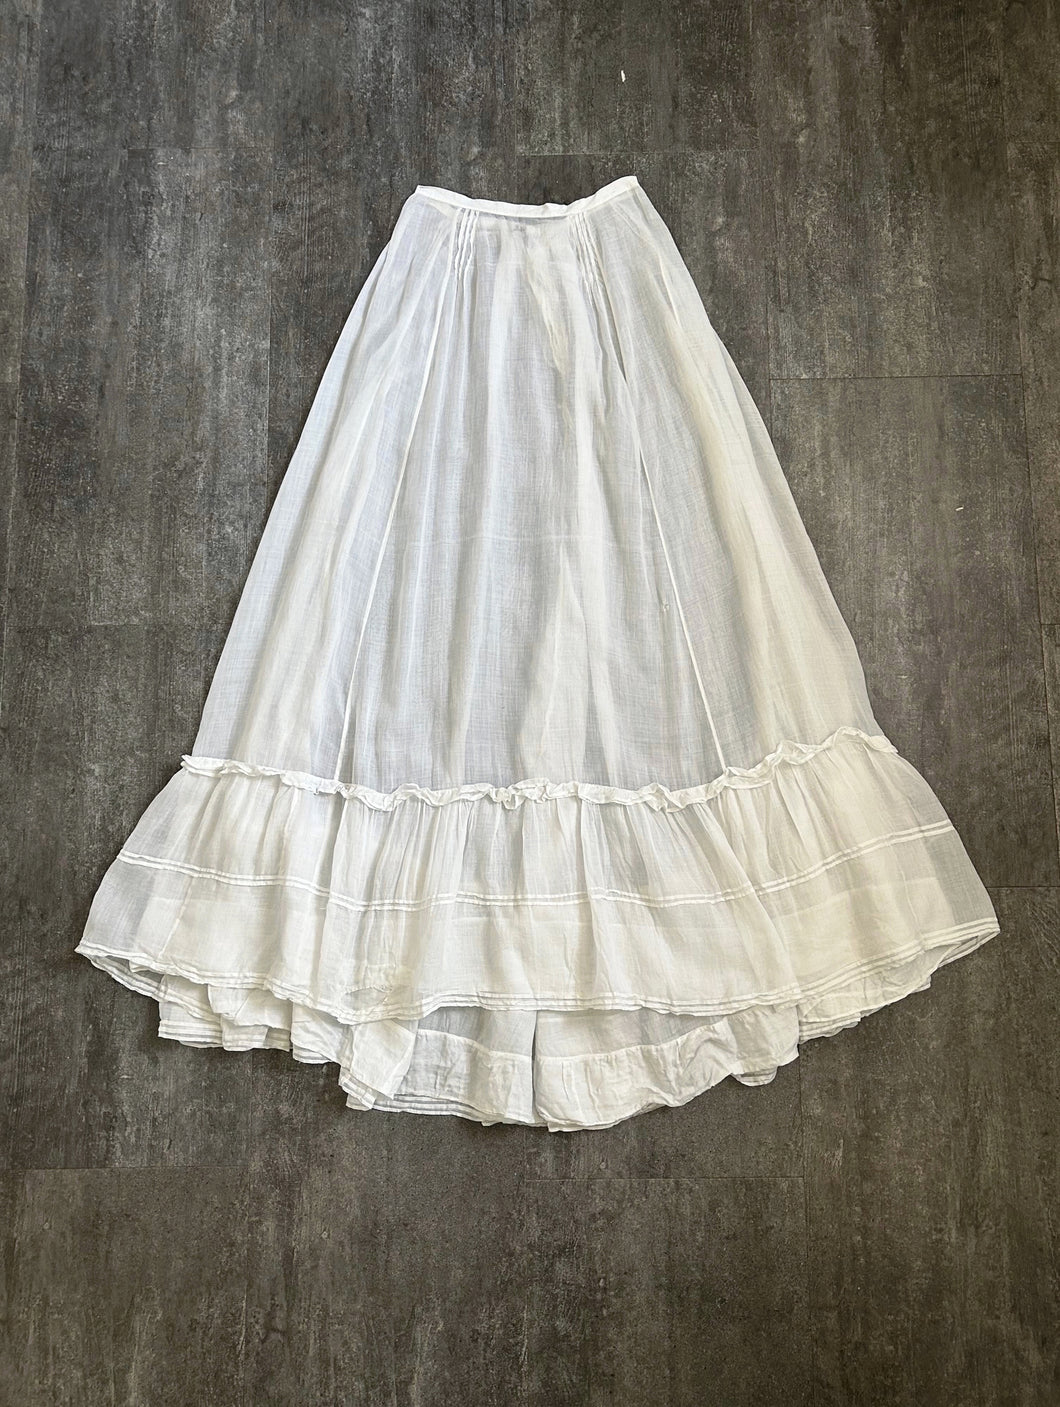 Antique petticoat . 1900s vintage cotton skirt . size xs